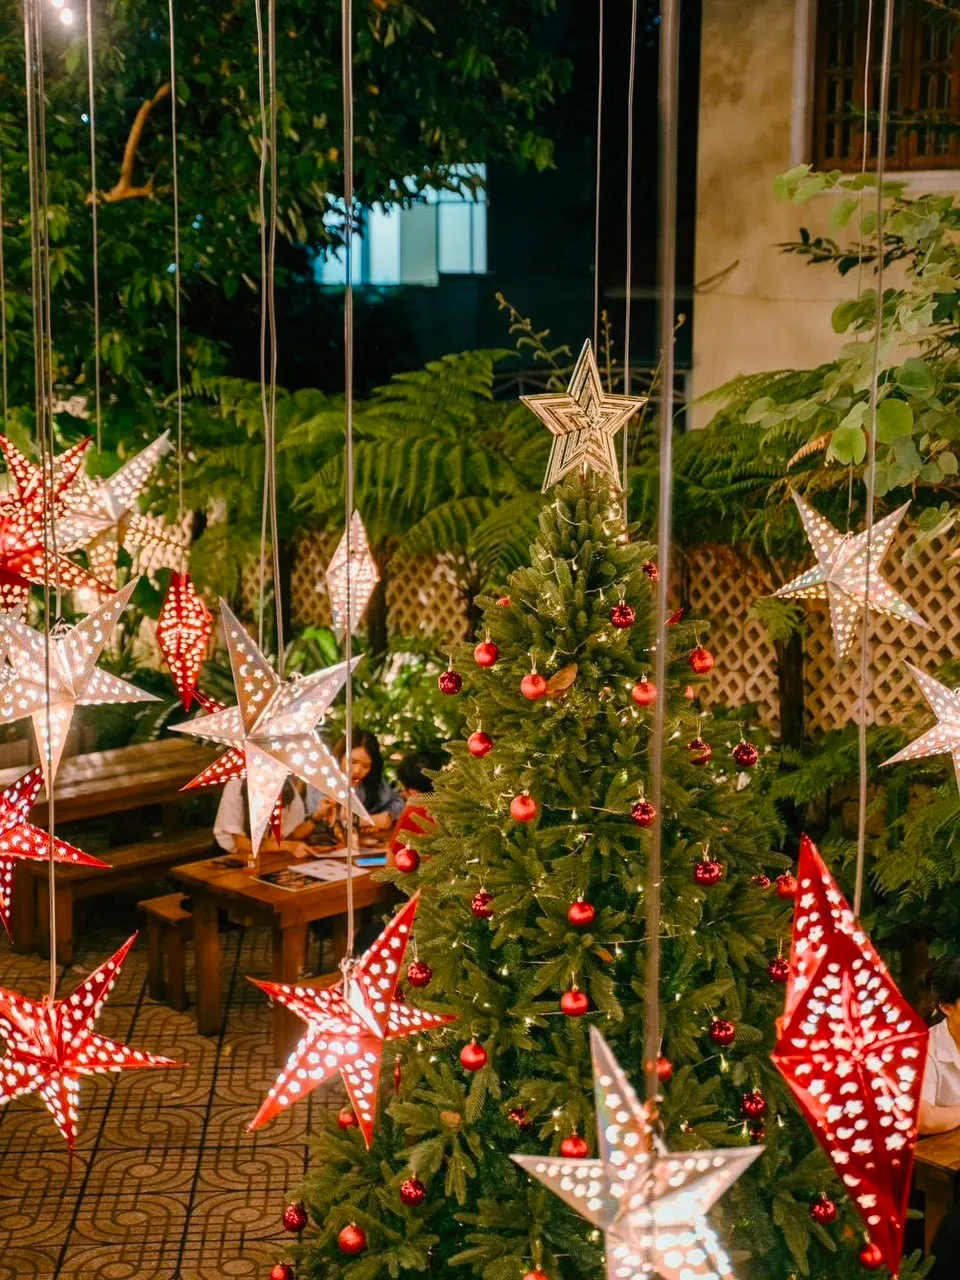 Hình ảnh trang trí Giáng sinh tại Sori Garden với đèn ngôi sao và cây thông